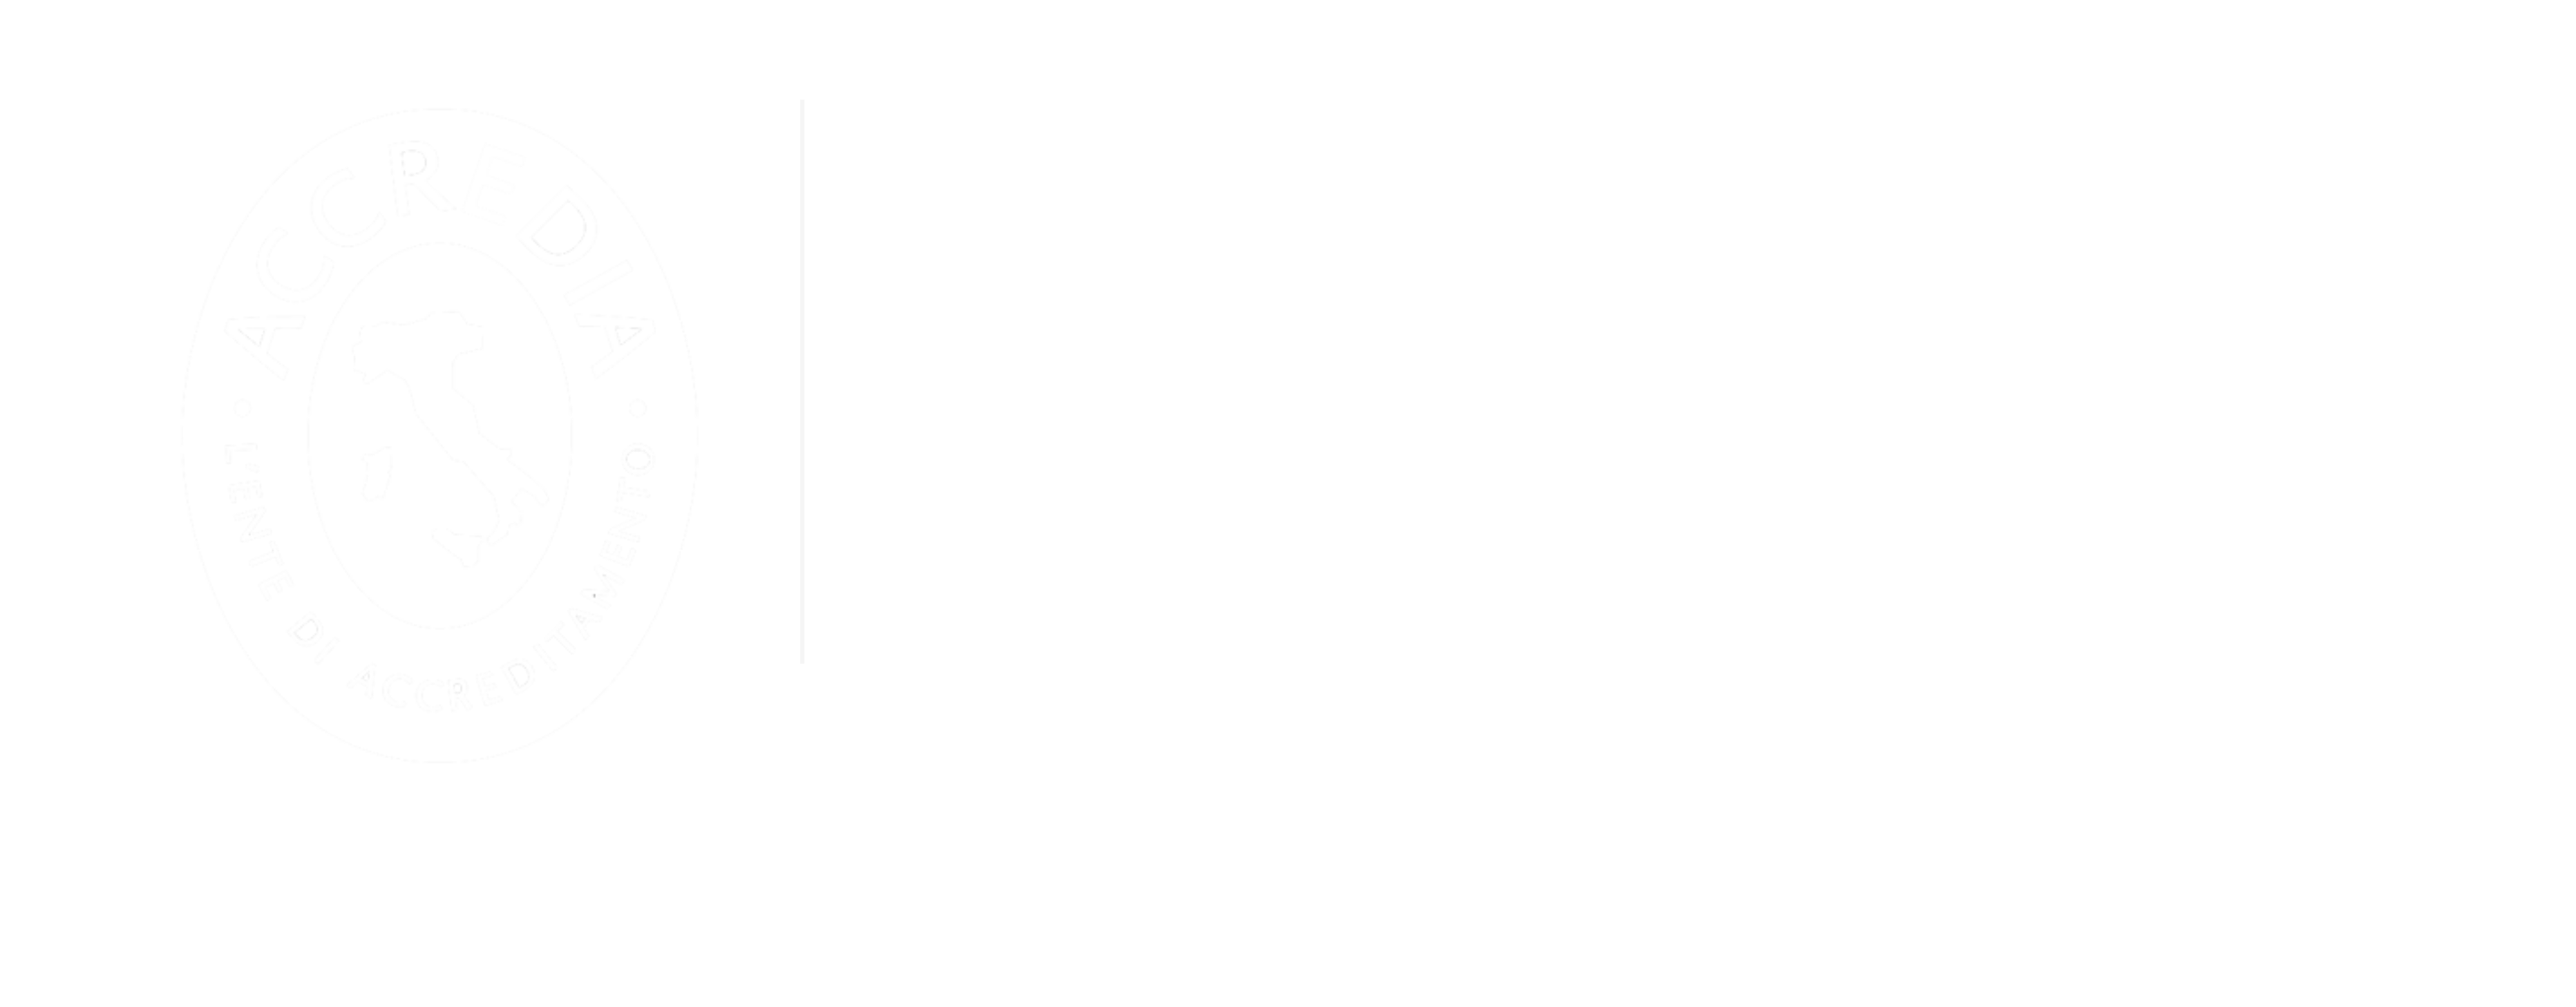 certificazione-9001-ekeria-white